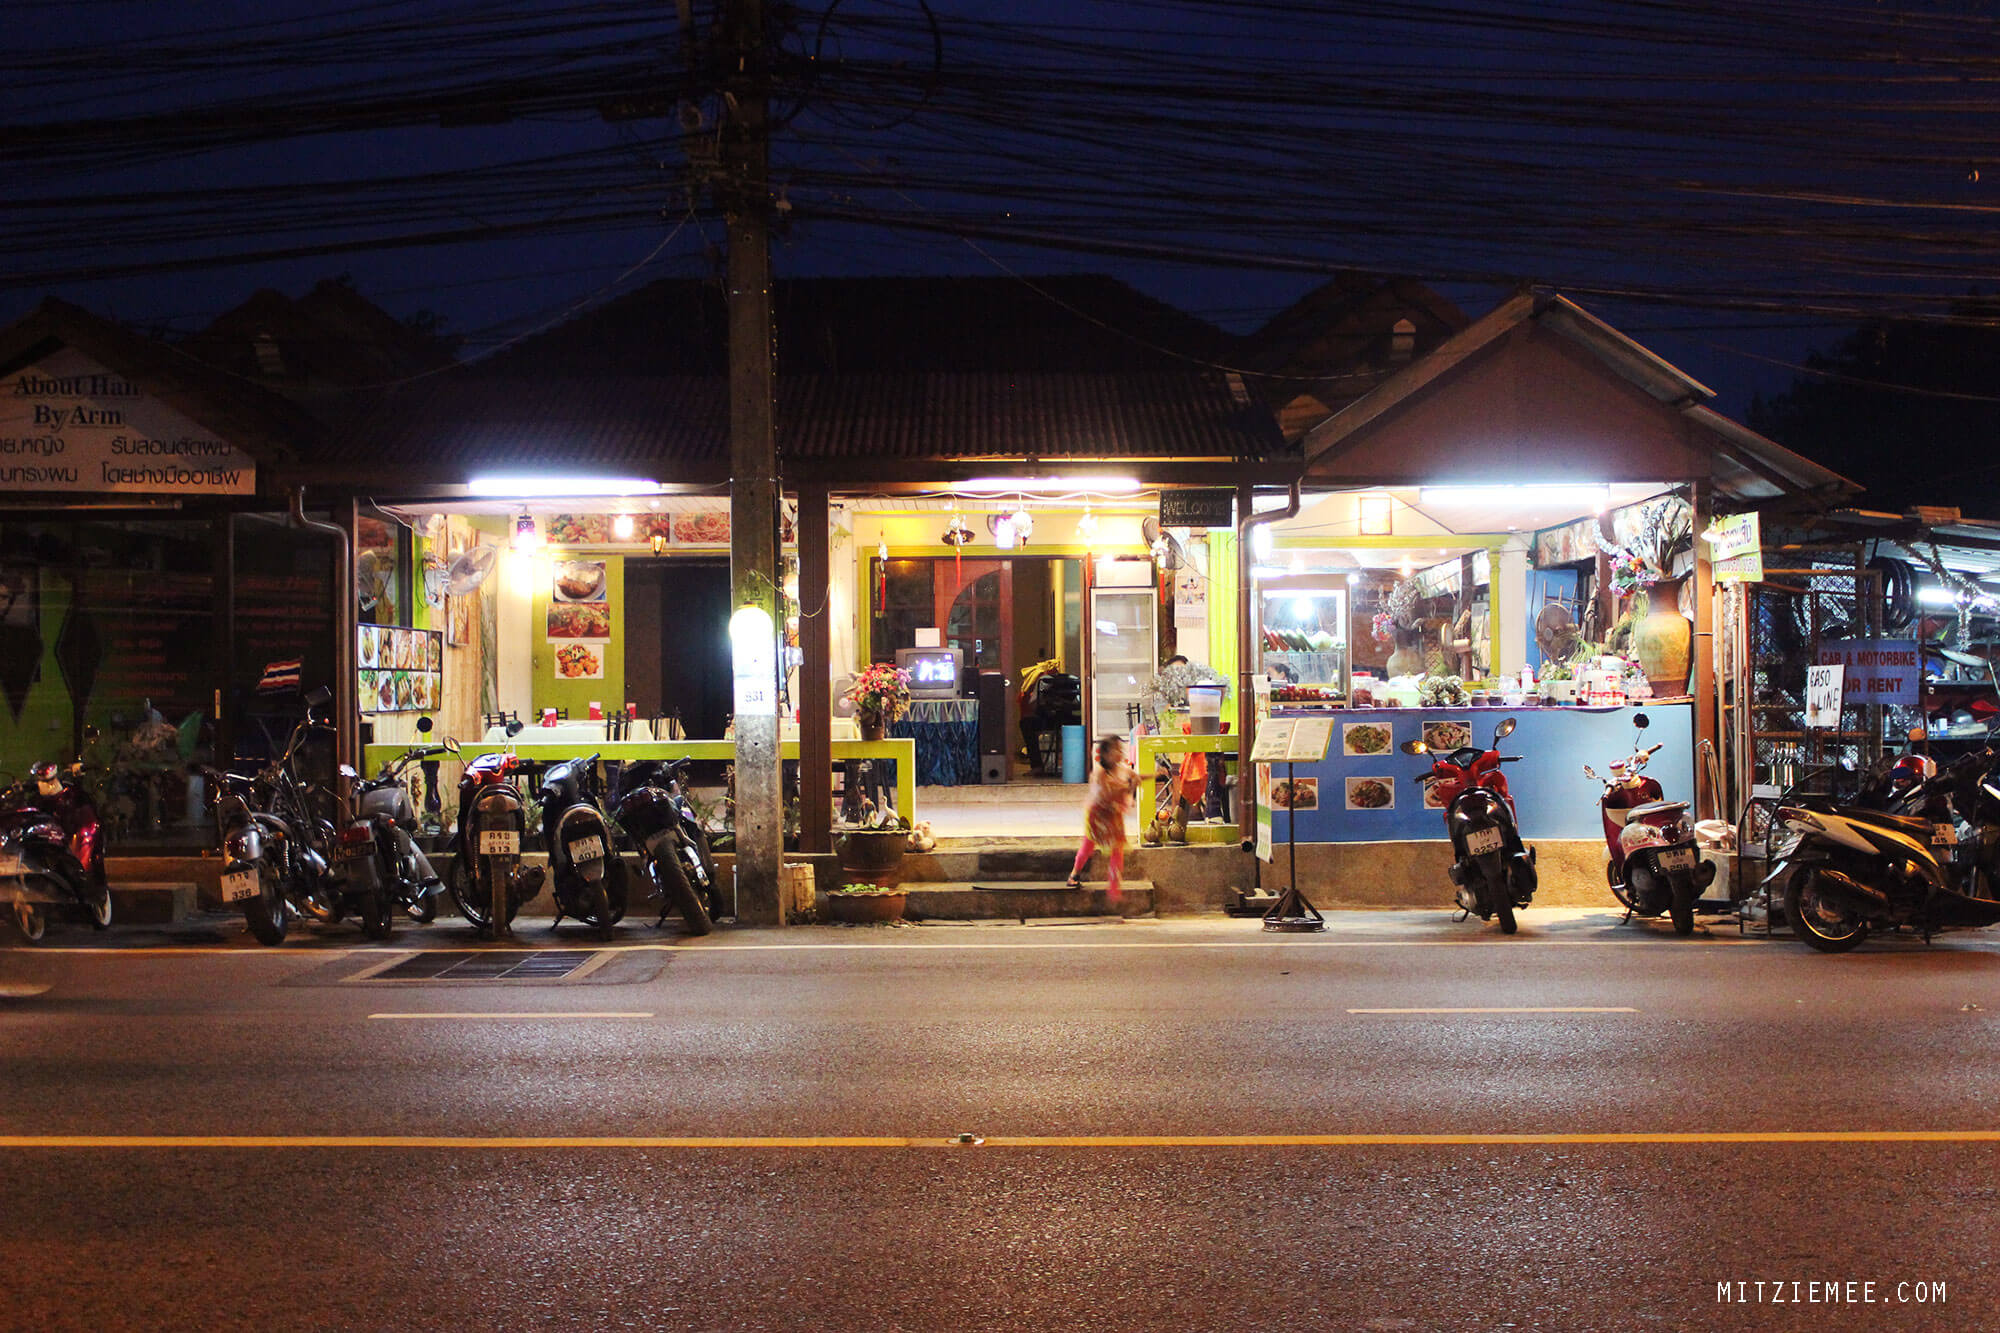 Restaurants in Karon beach, Phuket